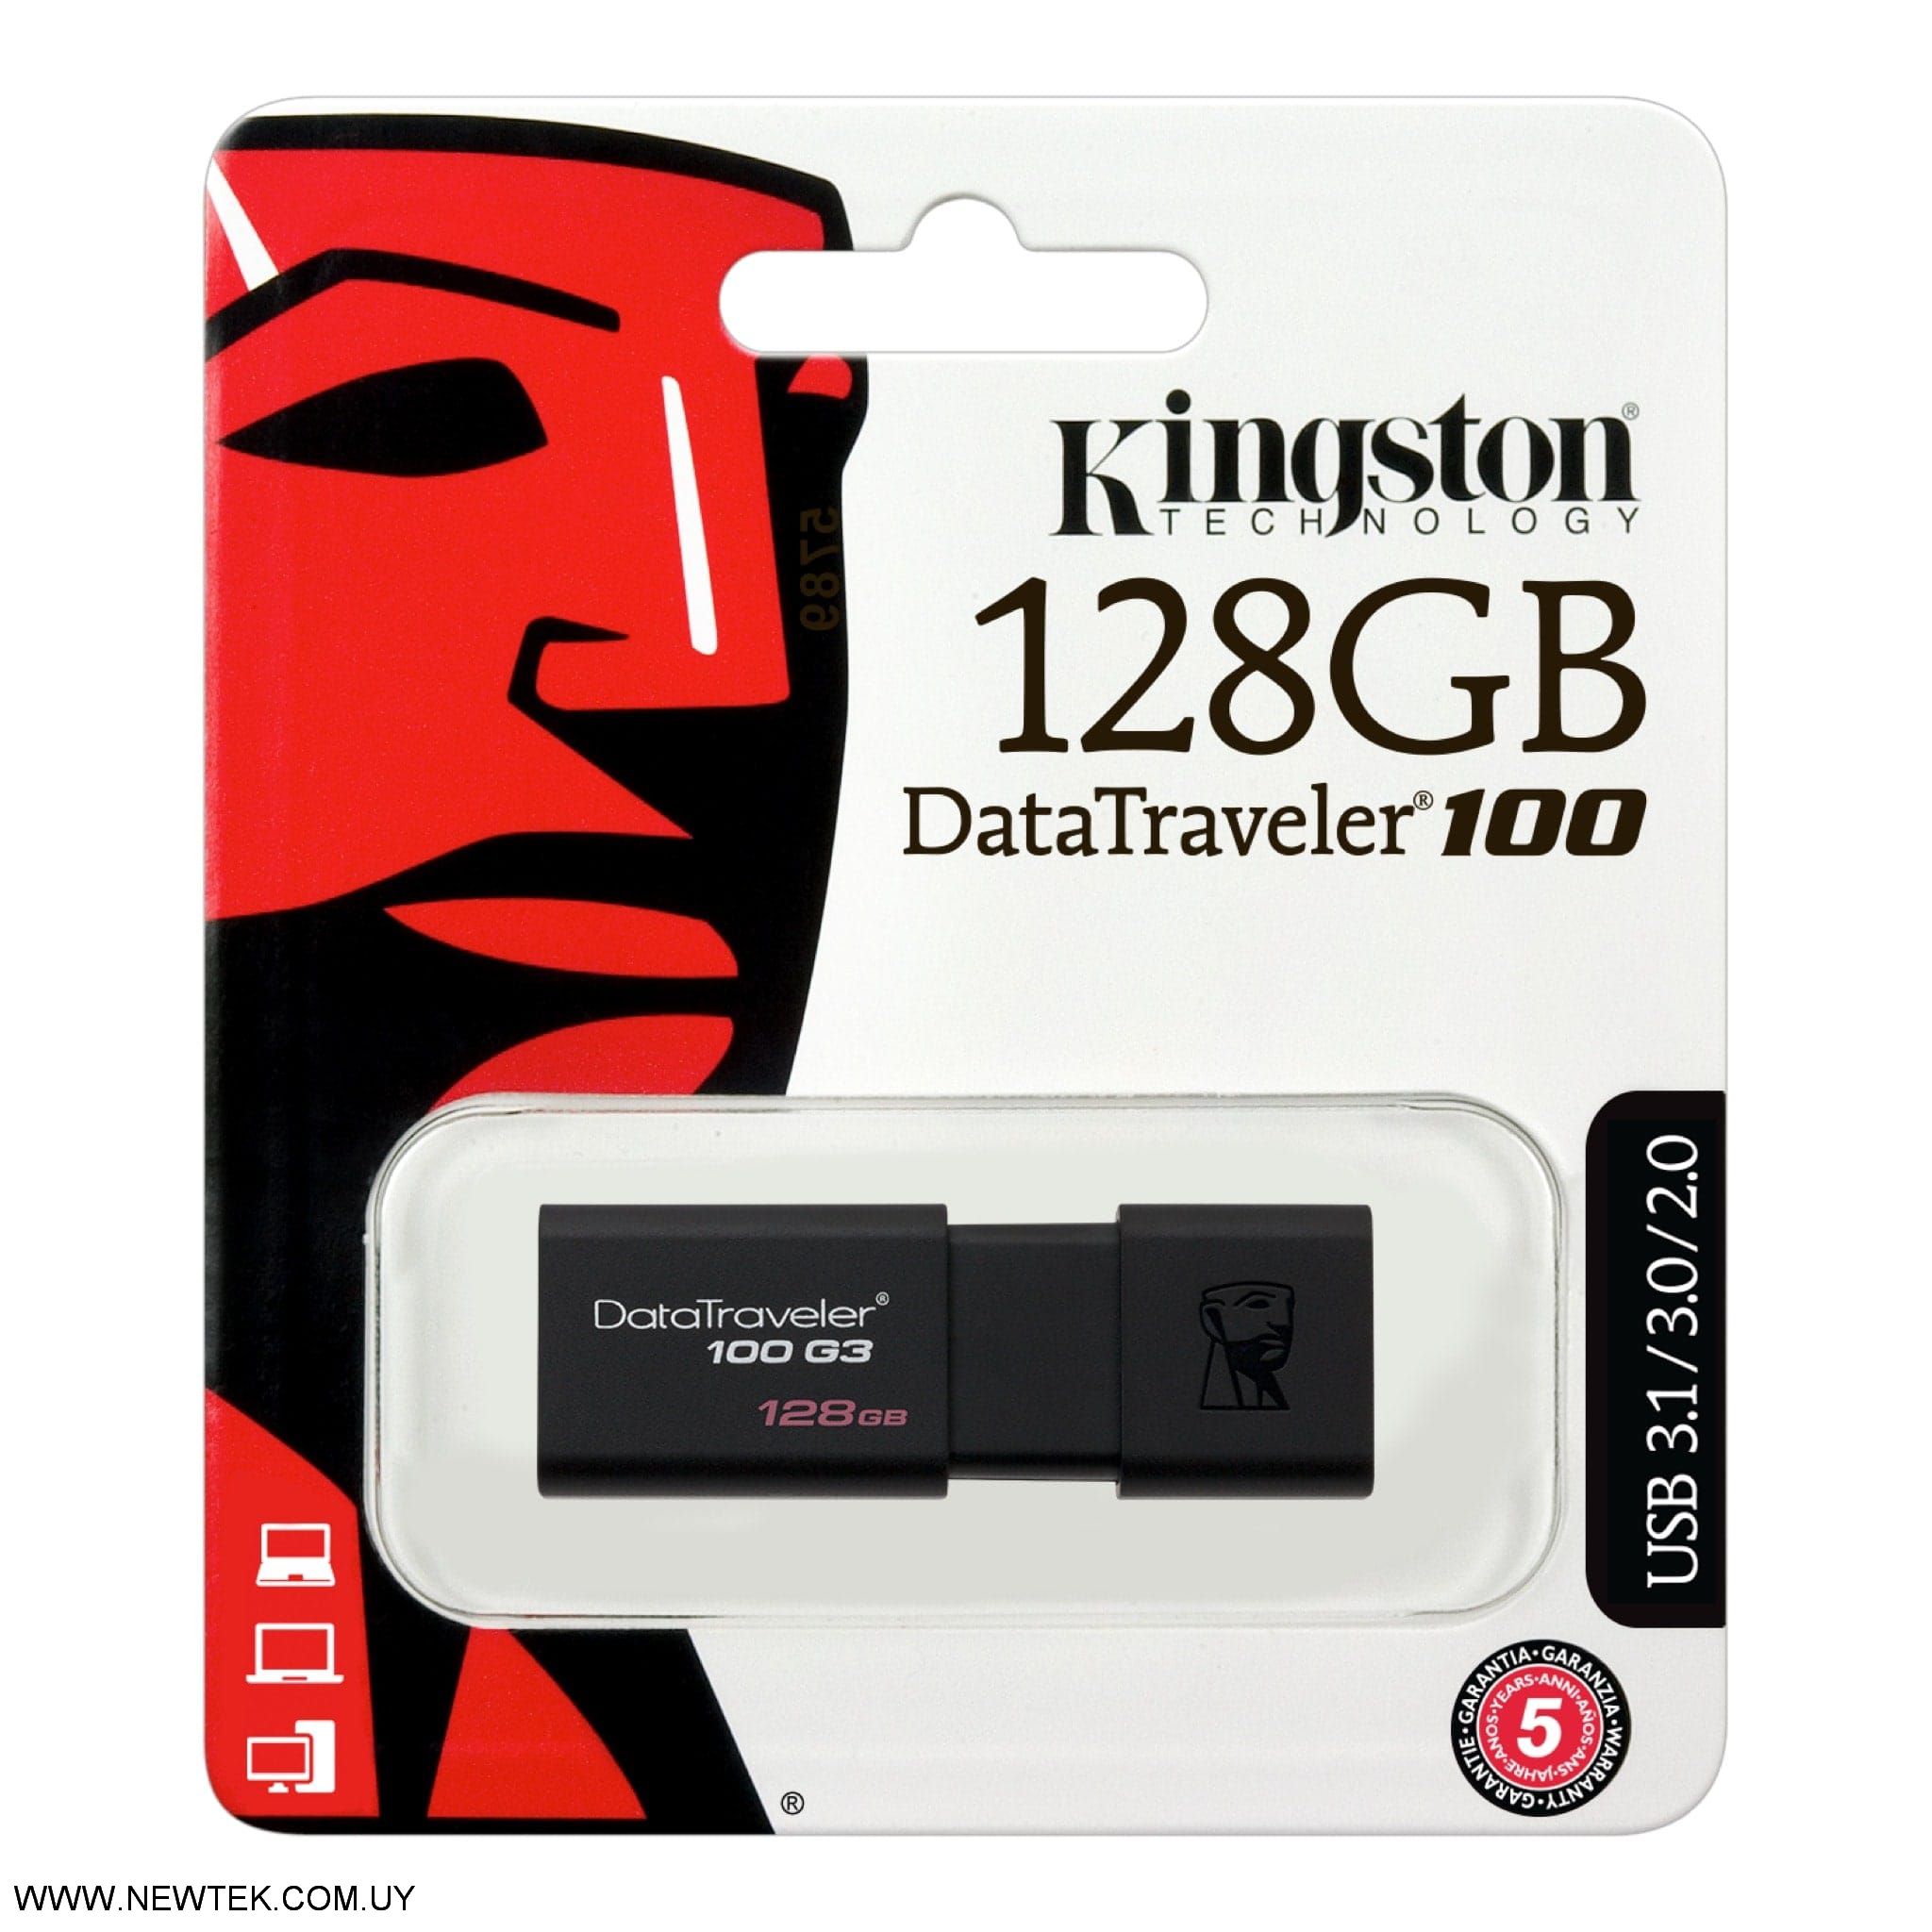 PenDrive USB 3.0 Kingston Data Traveler DT100G3 Gen3 128GB DT100G3/128GB 130MB/s